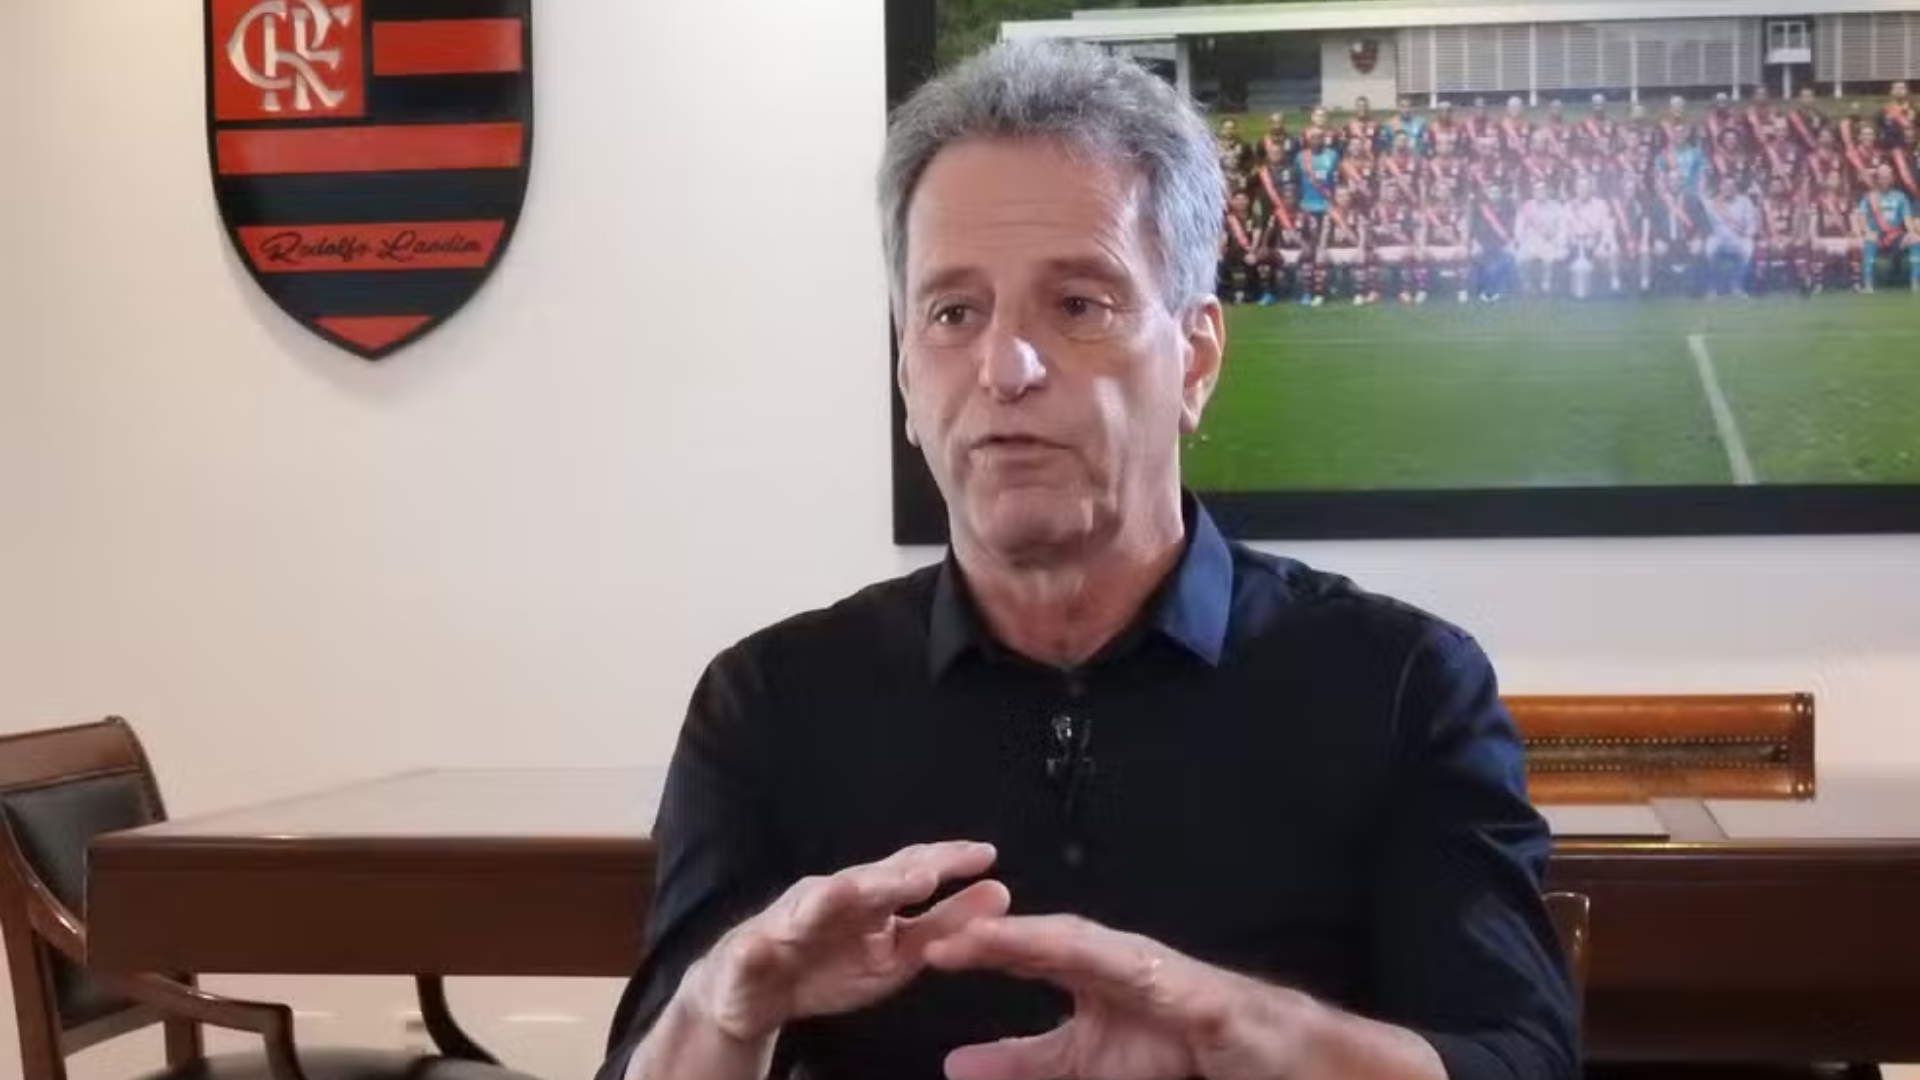 Landim faz promessa de que novo estádio do Flamengo terá setores populares